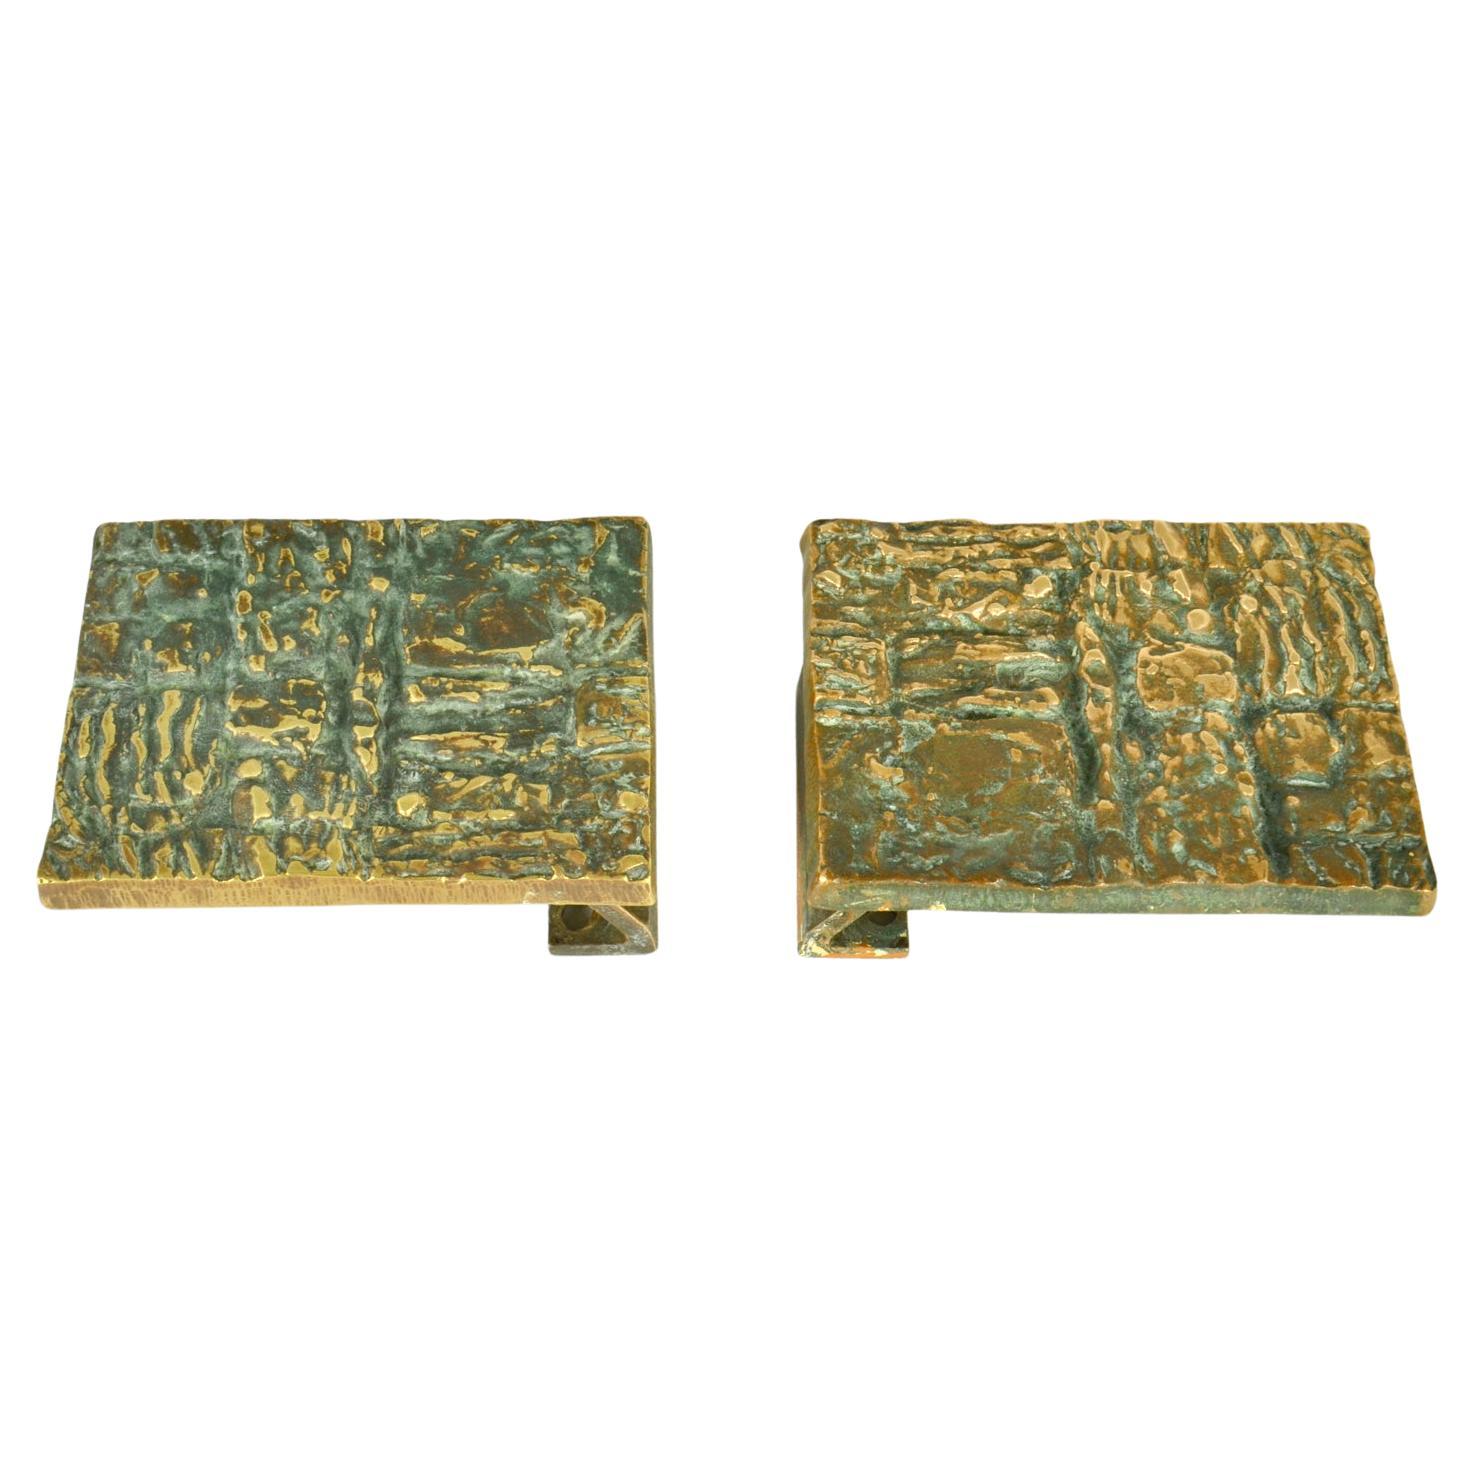 Paar Bronze-Türgriffe zum Drücken und Ziehen, rechteckig, mit brutalistischem Relief